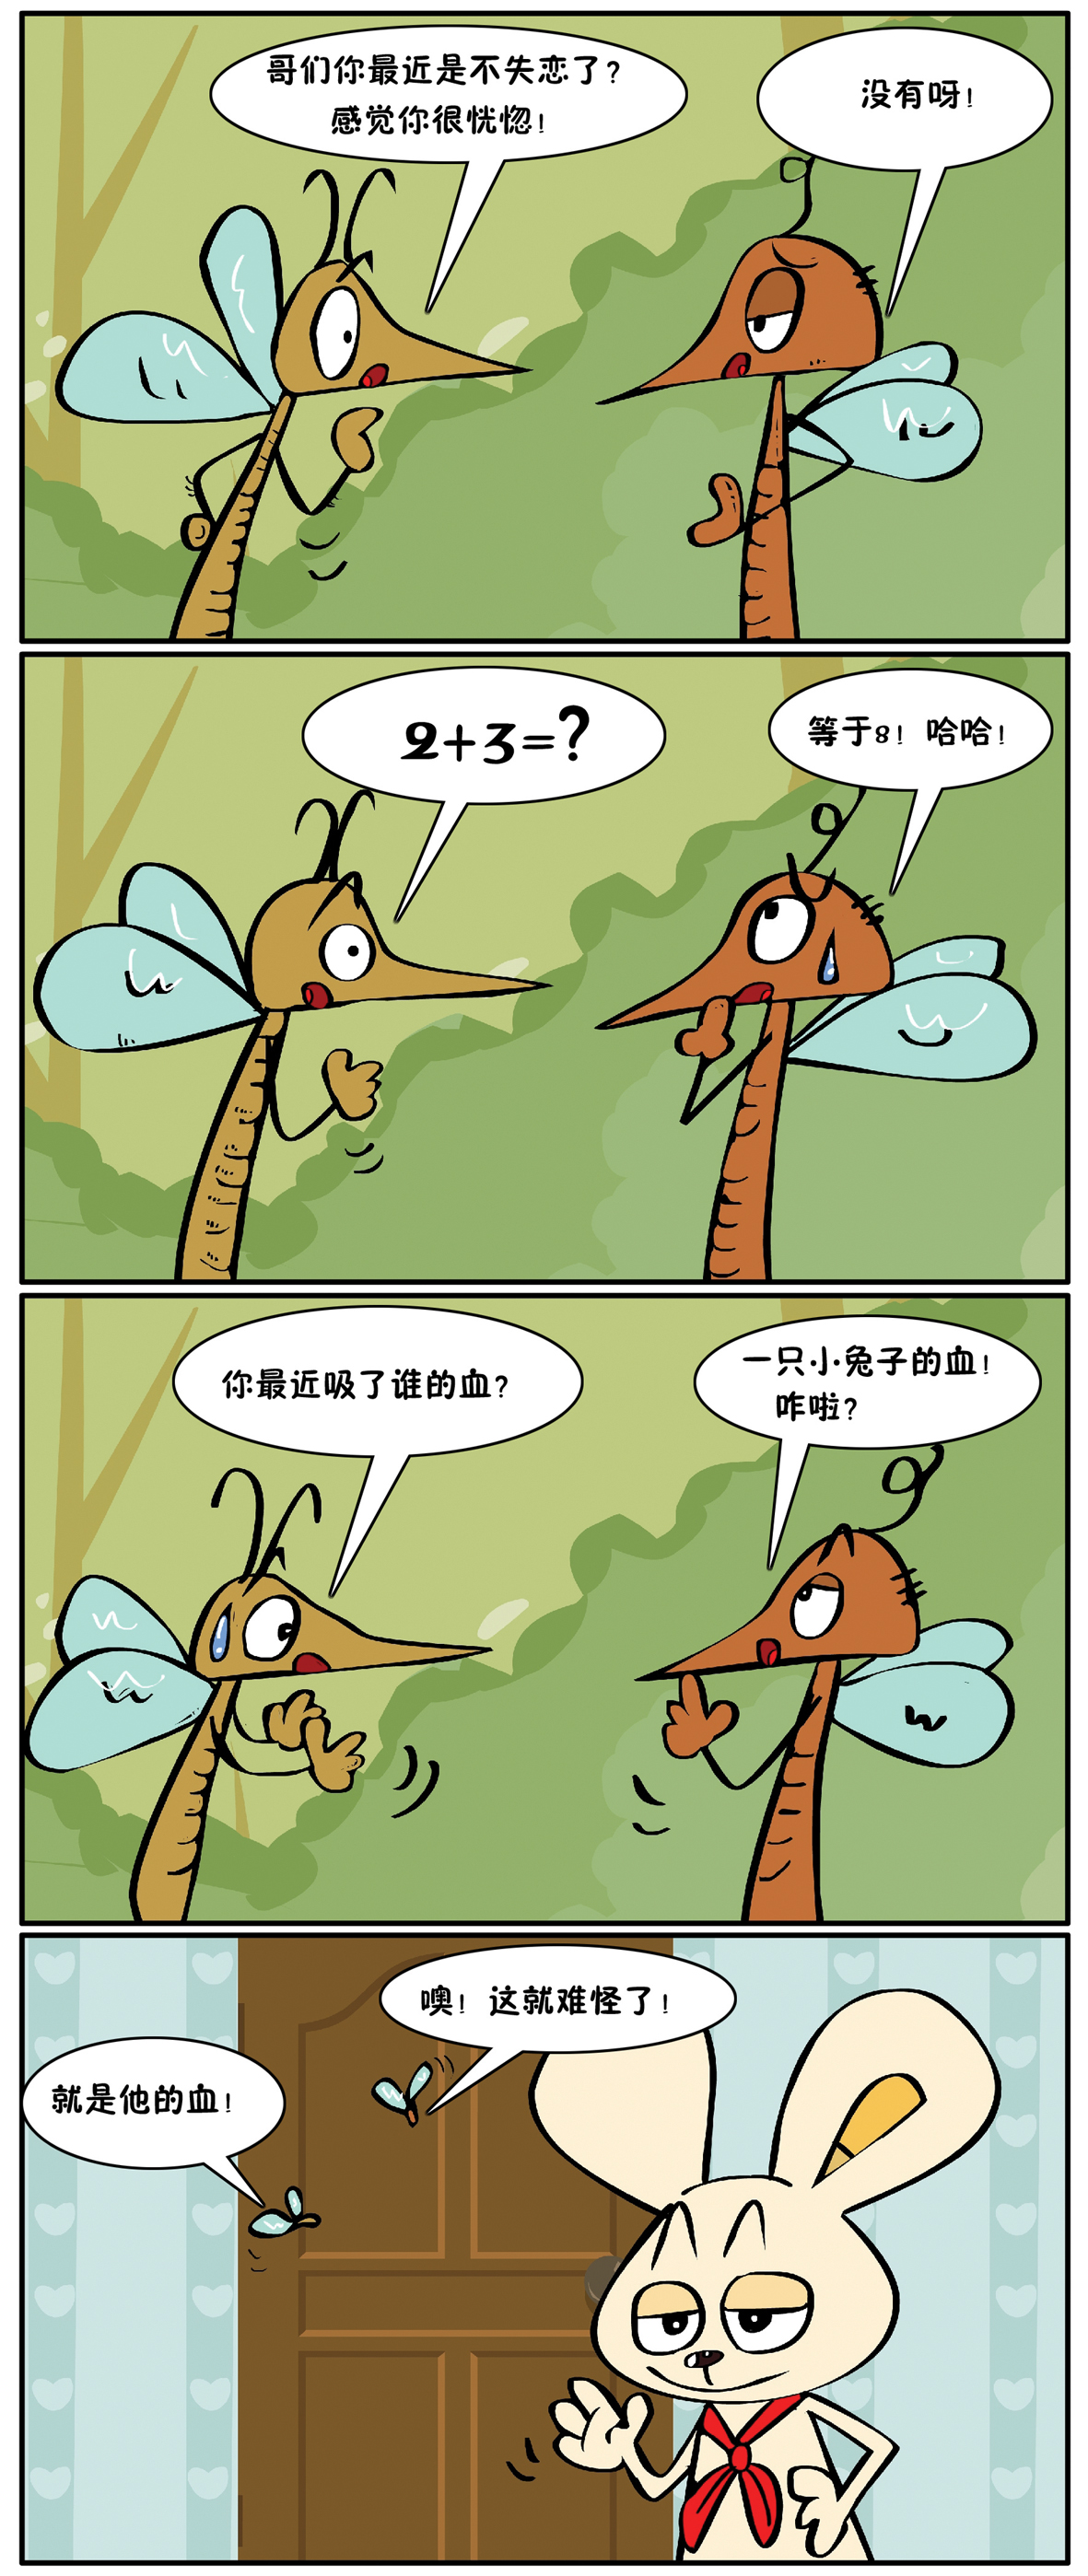 兔小小搞笑事件:蚊子的遭遇